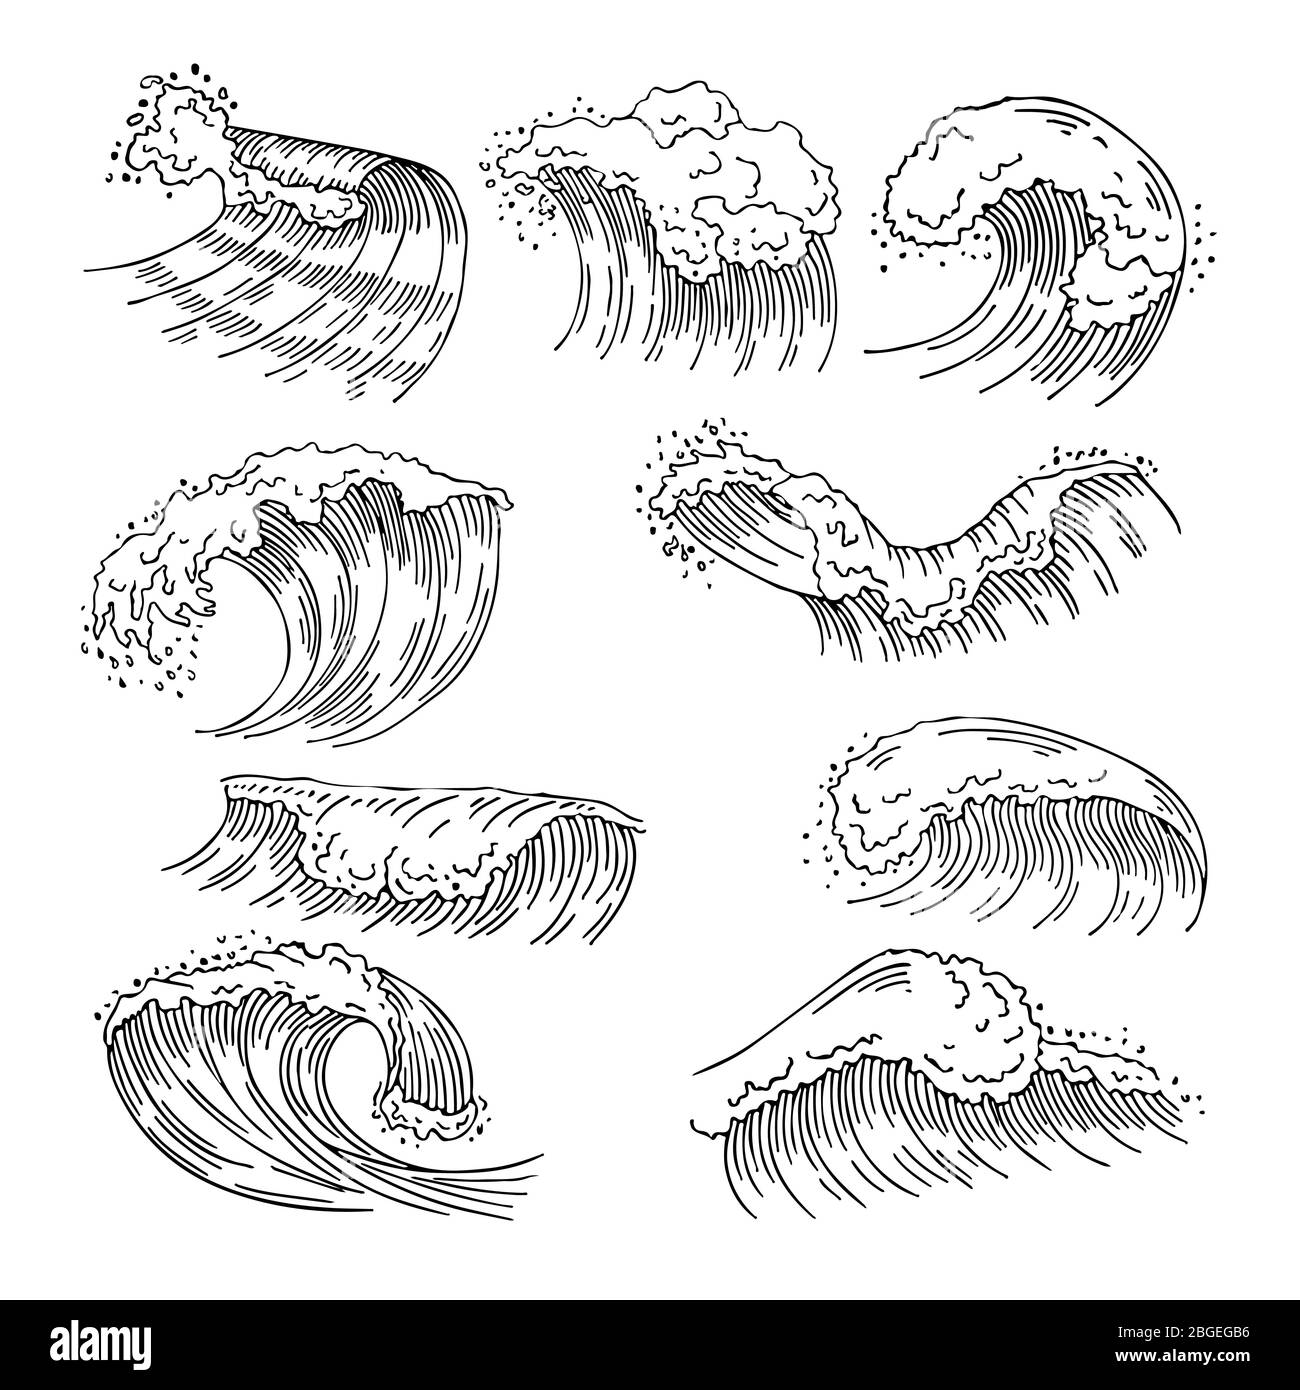 Illustrations marines des éclaboussures d'eau et des grandes vagues. Images vectorielles dessinées à la main Illustration de Vecteur